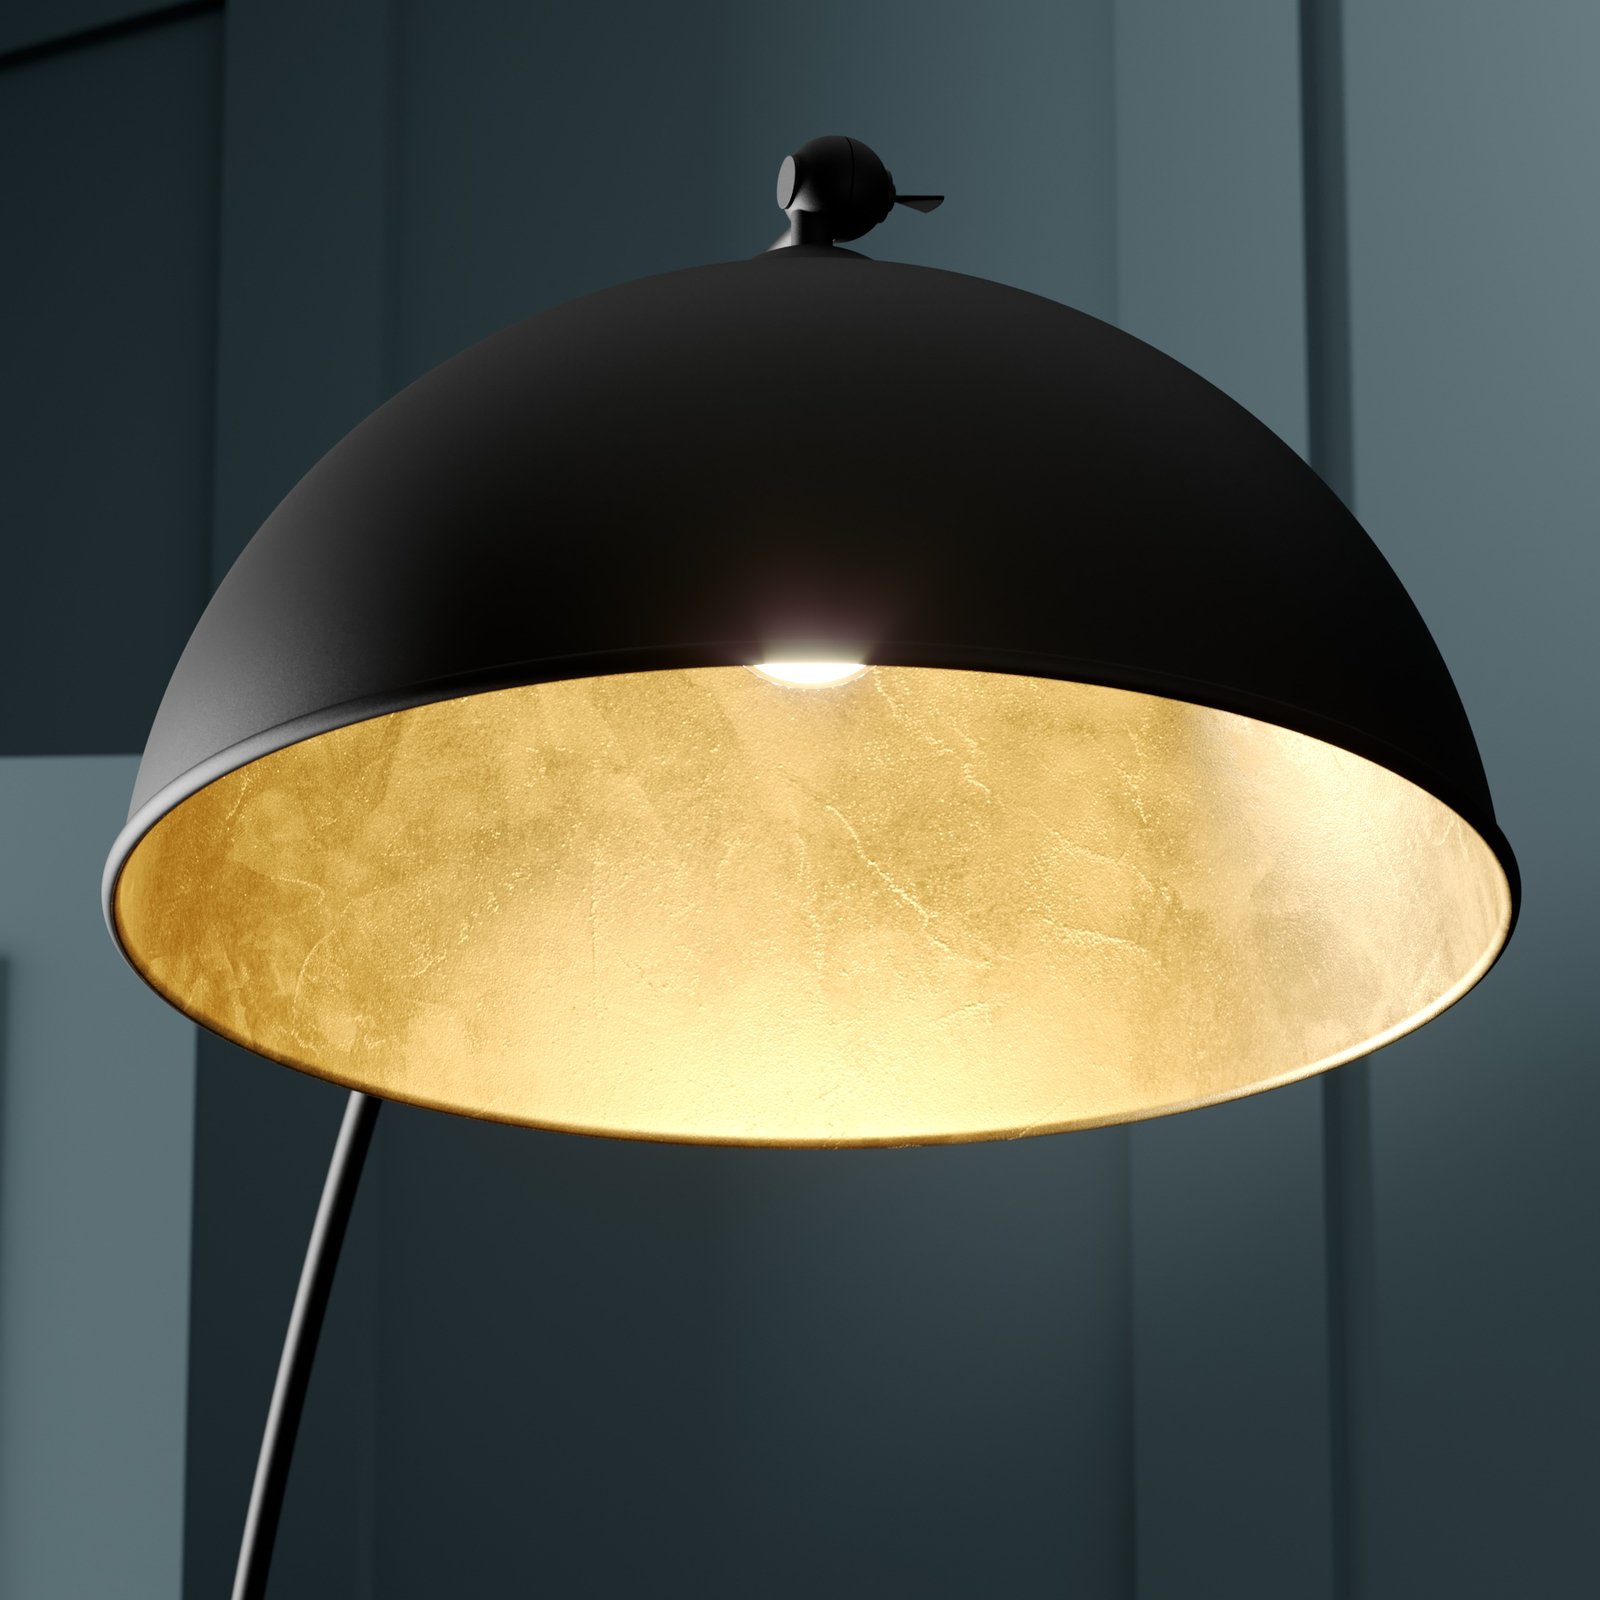 Łukowa lampa podłogowa Jonera, czarny, złoty kolor, metal